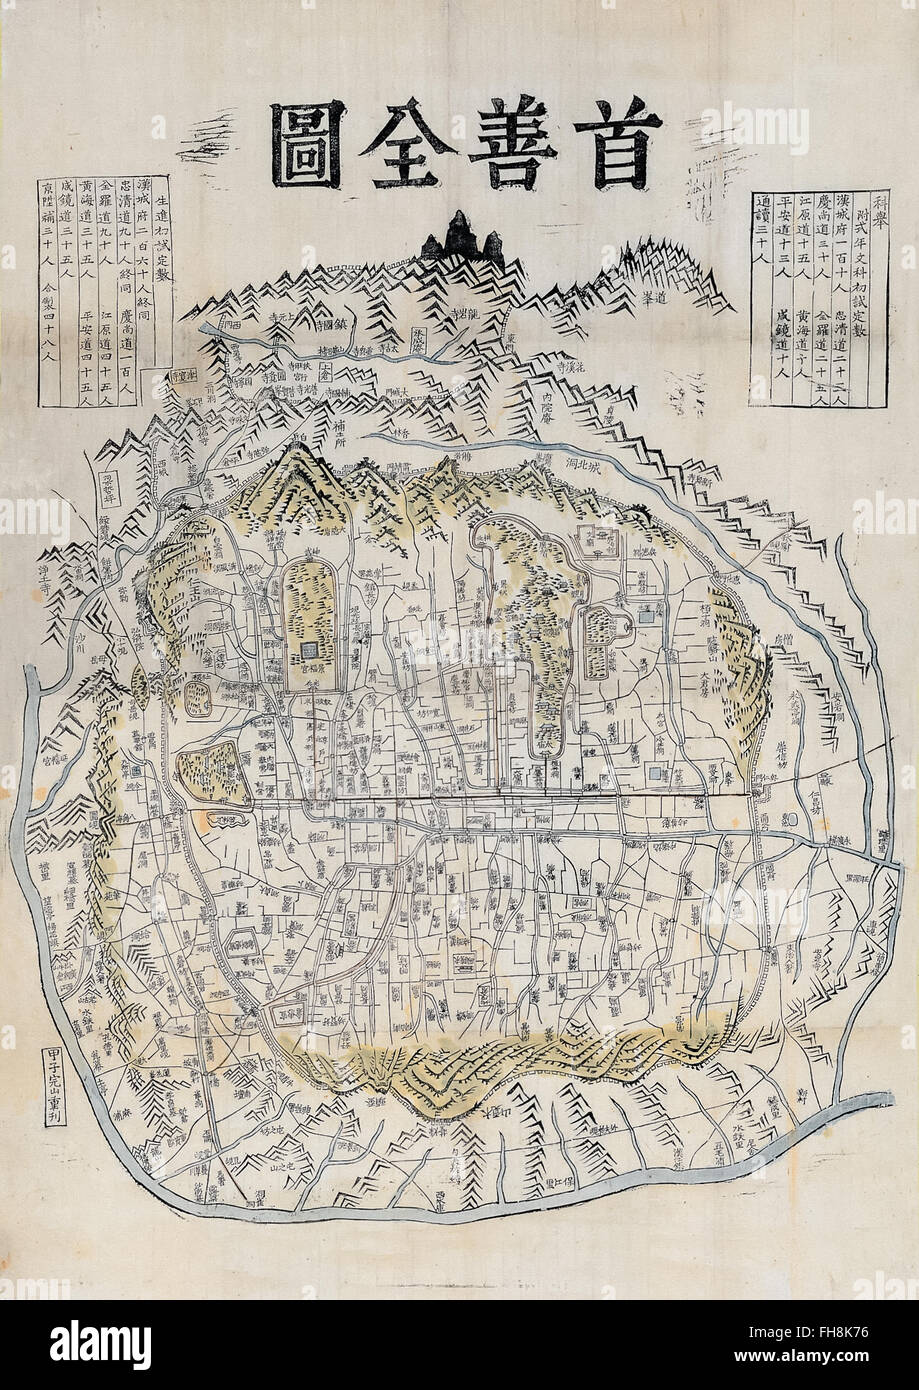 "Useonjeondo' mapa de Seul Corea por Kim Jeong-ho circa 1850 mostrando las murallas de la ciudad. Fotografía del mapa original en una colección privada. Foto de stock